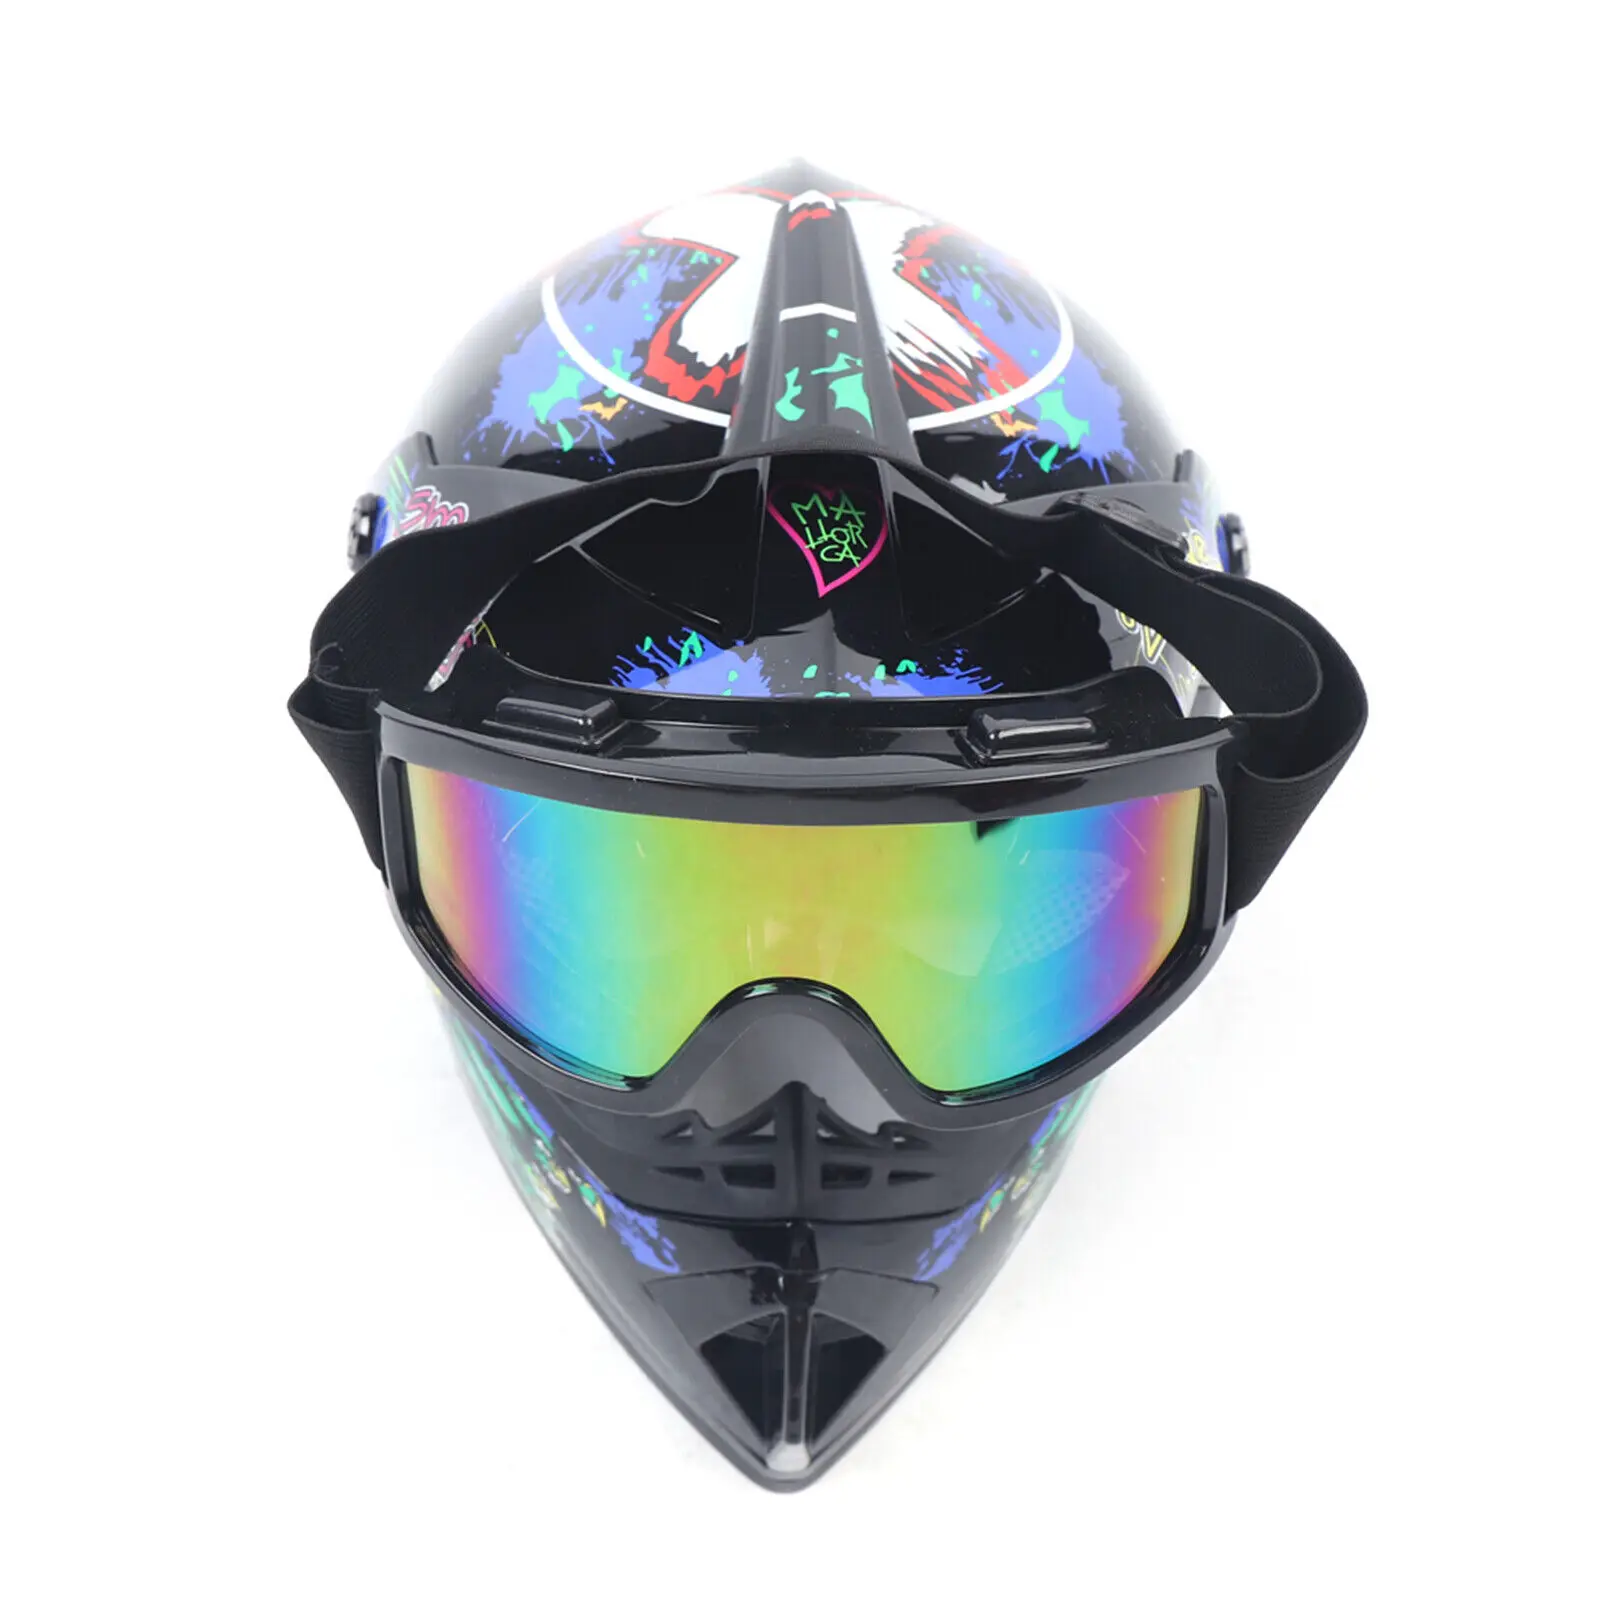 Enlarge Motorcycle Dirt Bike Motocross Off Road Helmets Unisex Adult Racing Helmet